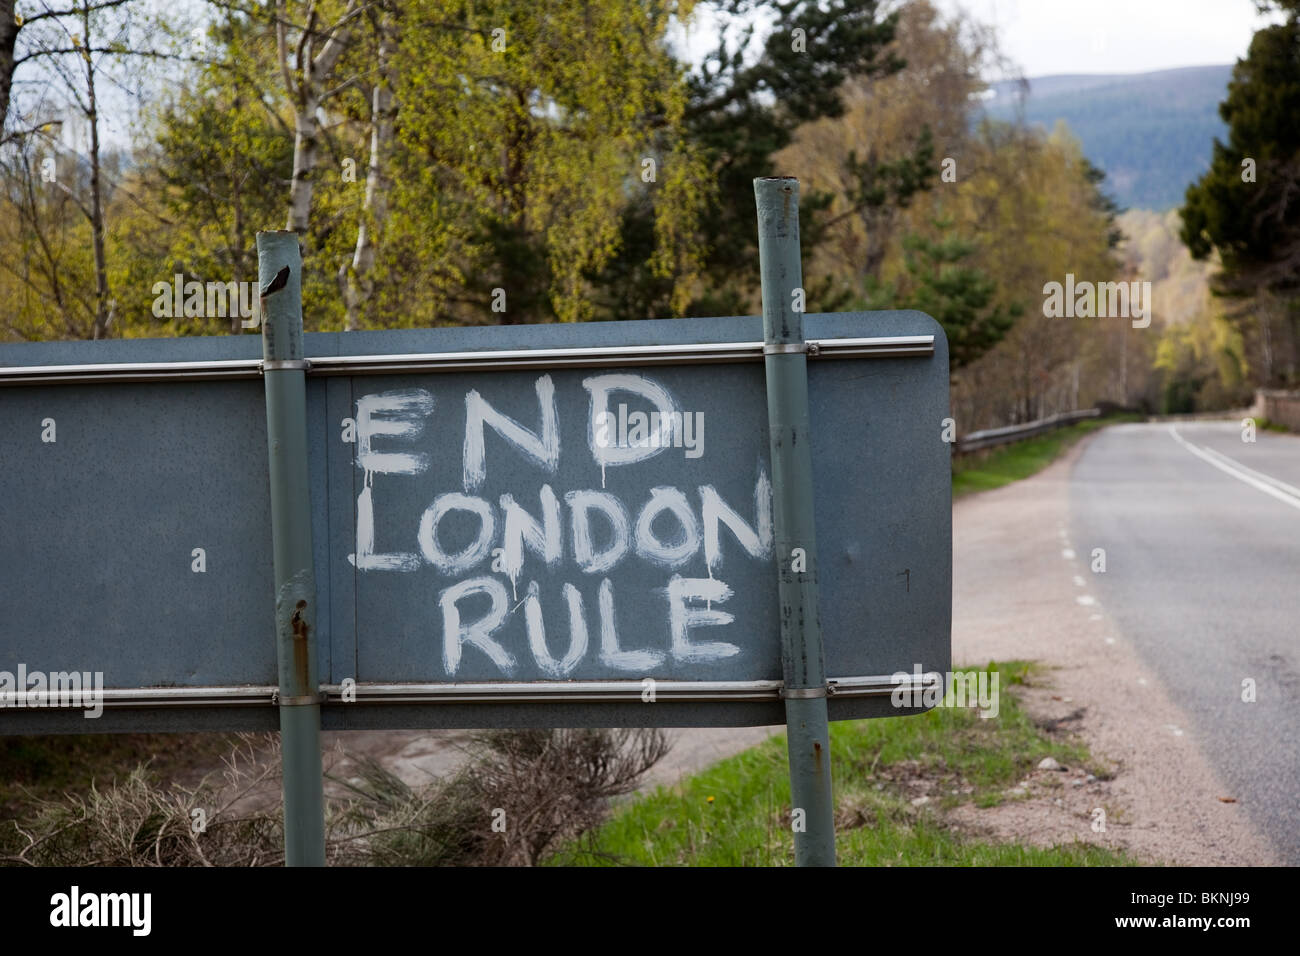 indyref2 End London Rule, Scottish Independence graffiti plaidoyer et le slogan de bord de route pour auto-règle de signalisation routière. Aberdeenshire, Écosse, Royaume-Uni Banque D'Images